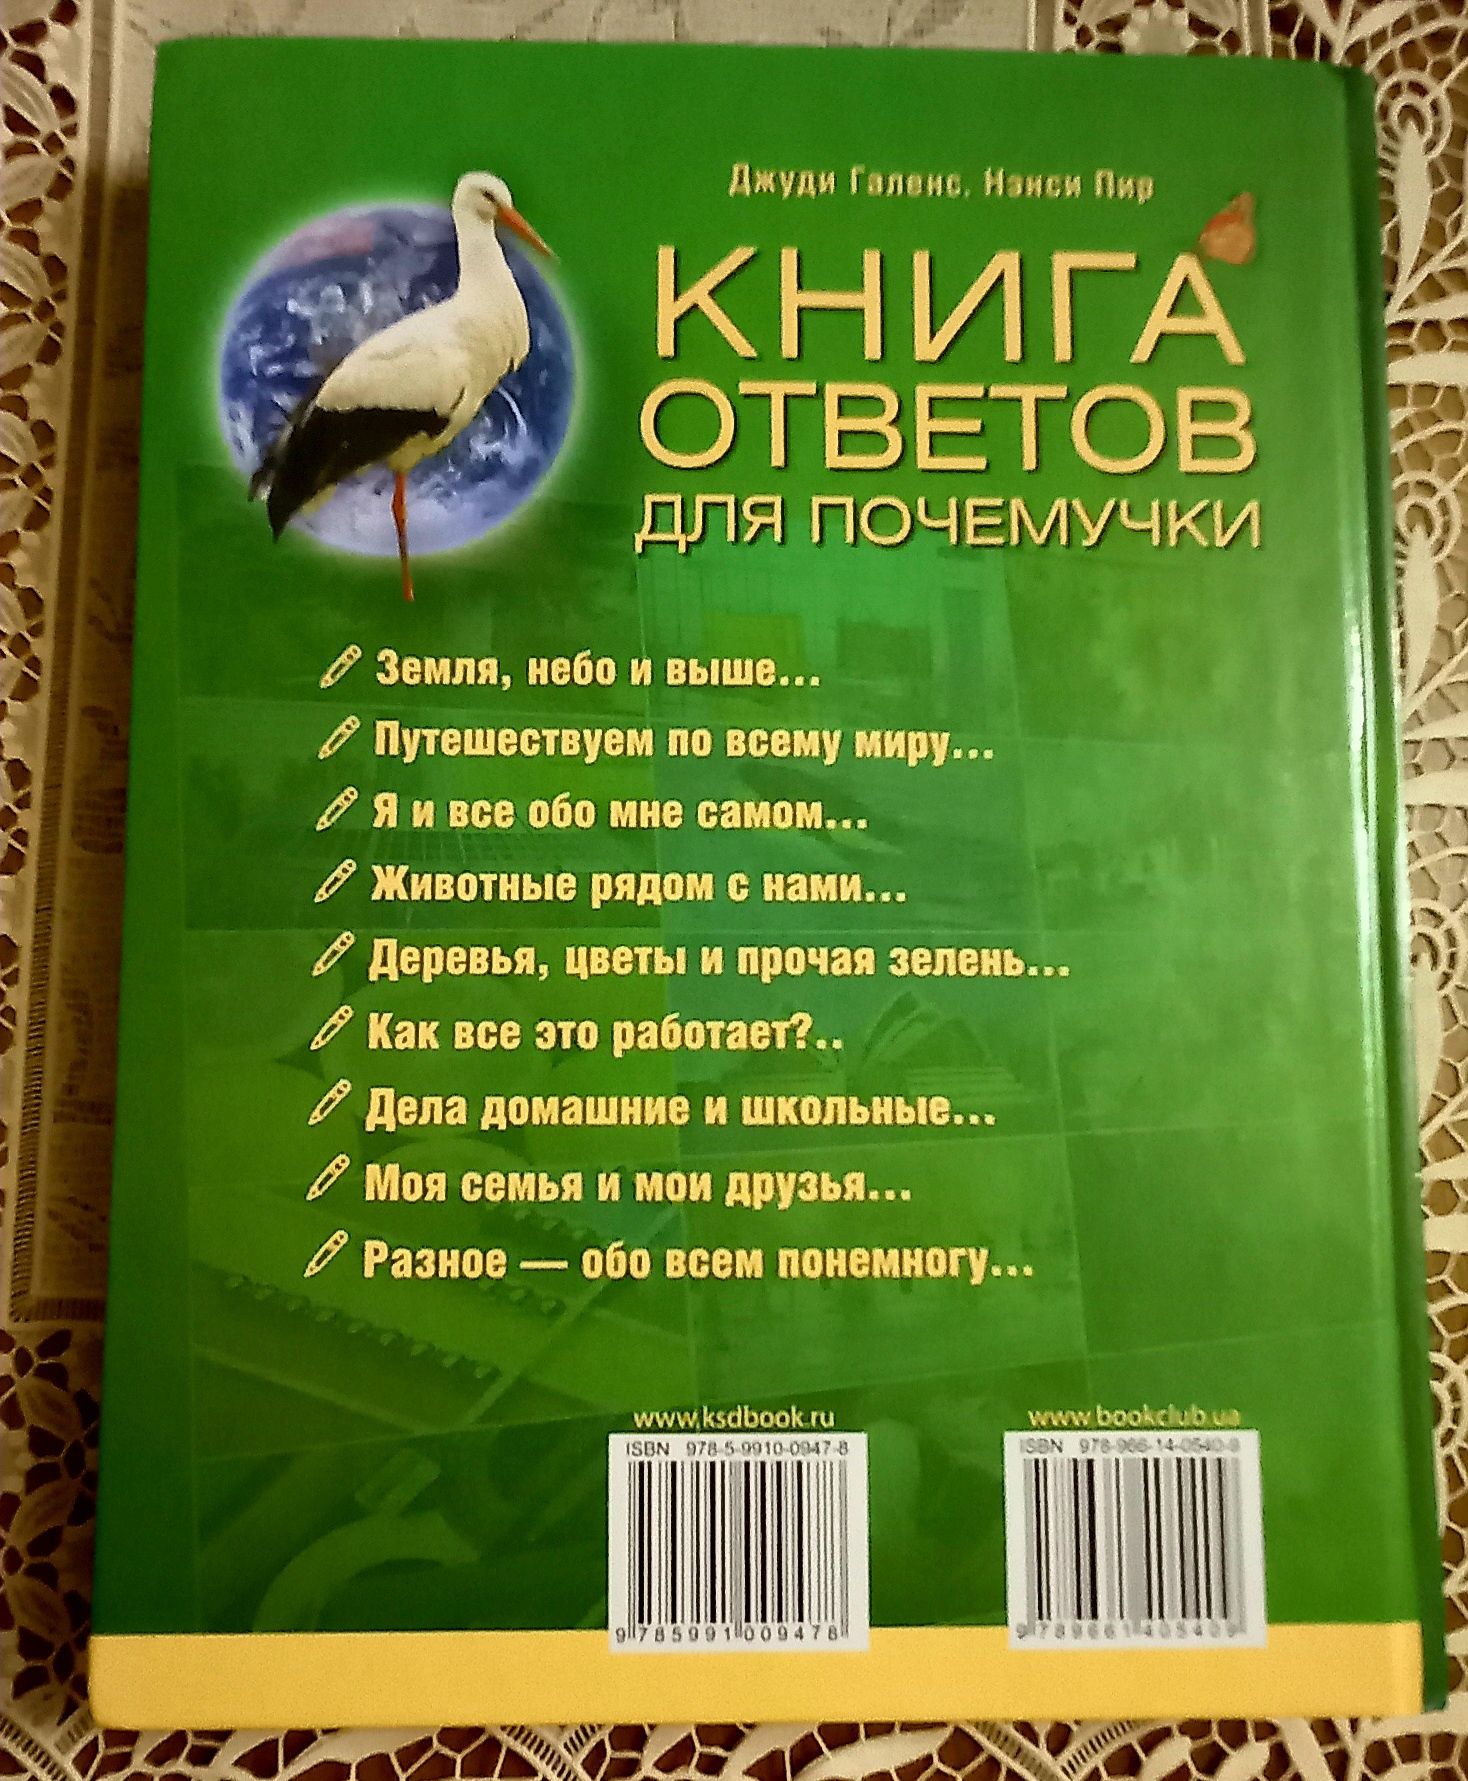 Детская энциклопедия "Книга ответов для почемучки"